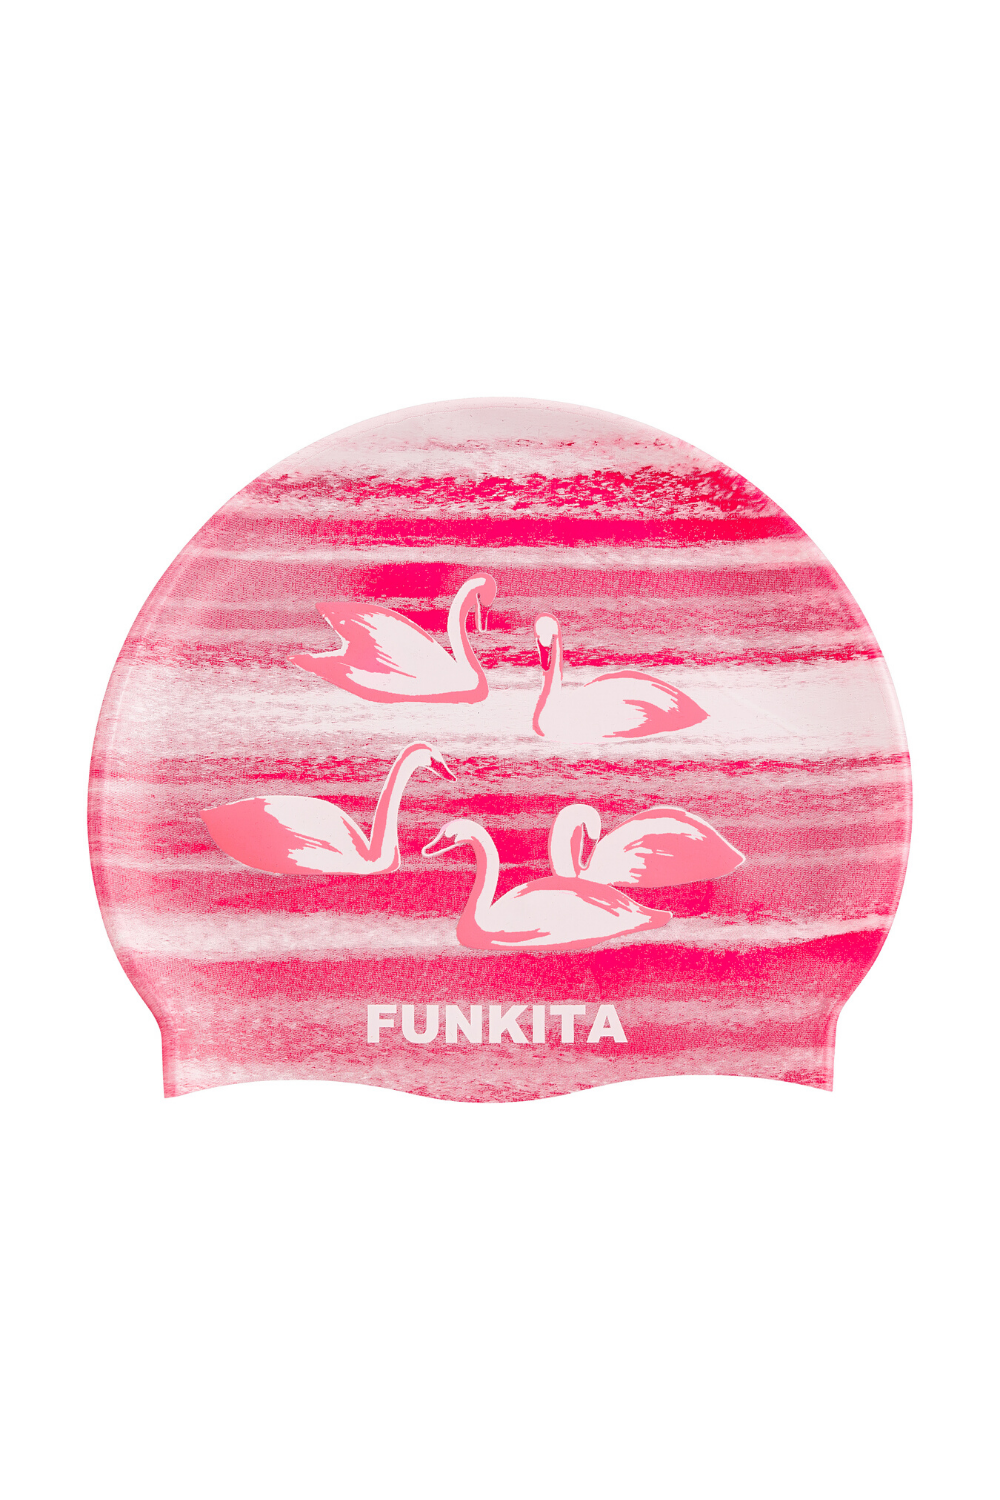 FUNKITA - SWIMMING CAP - SWAN LAKE